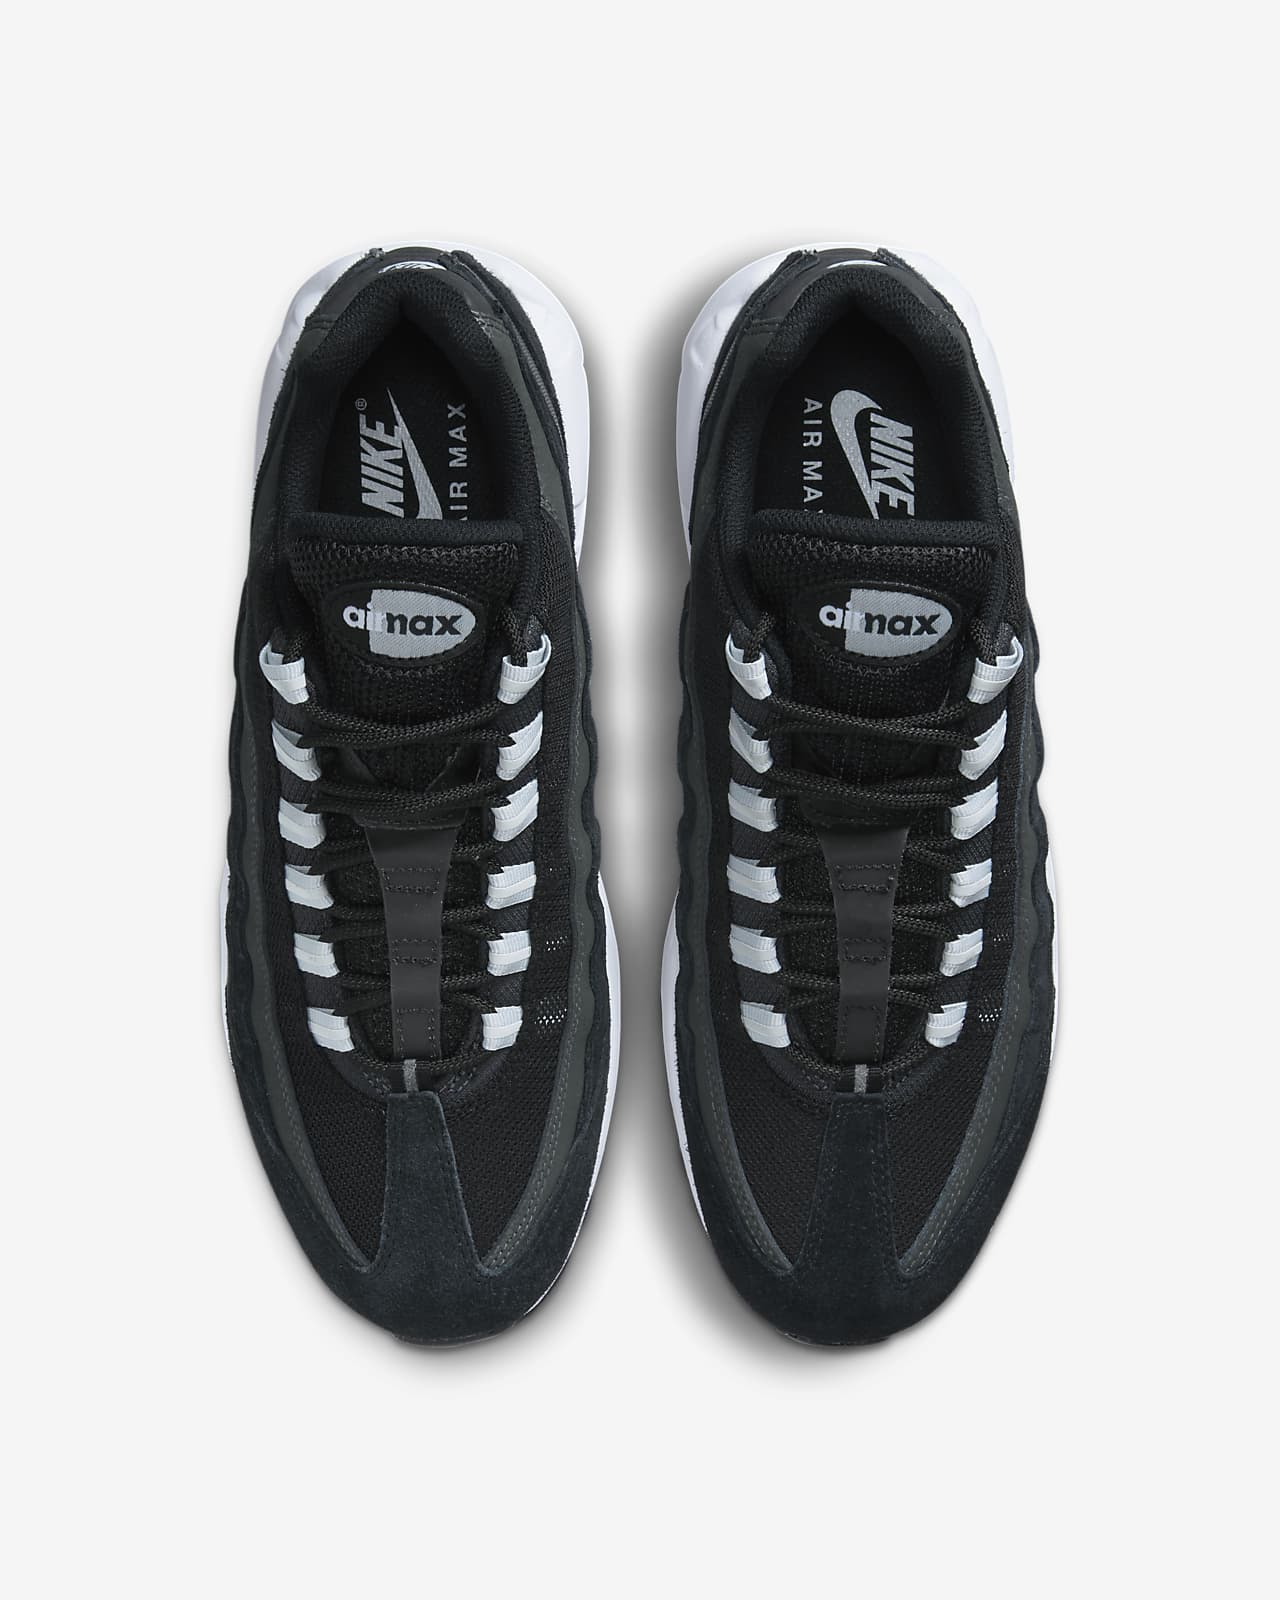 Nike 'Air Max 95 TT Premium' sneakers, Men's Shoes